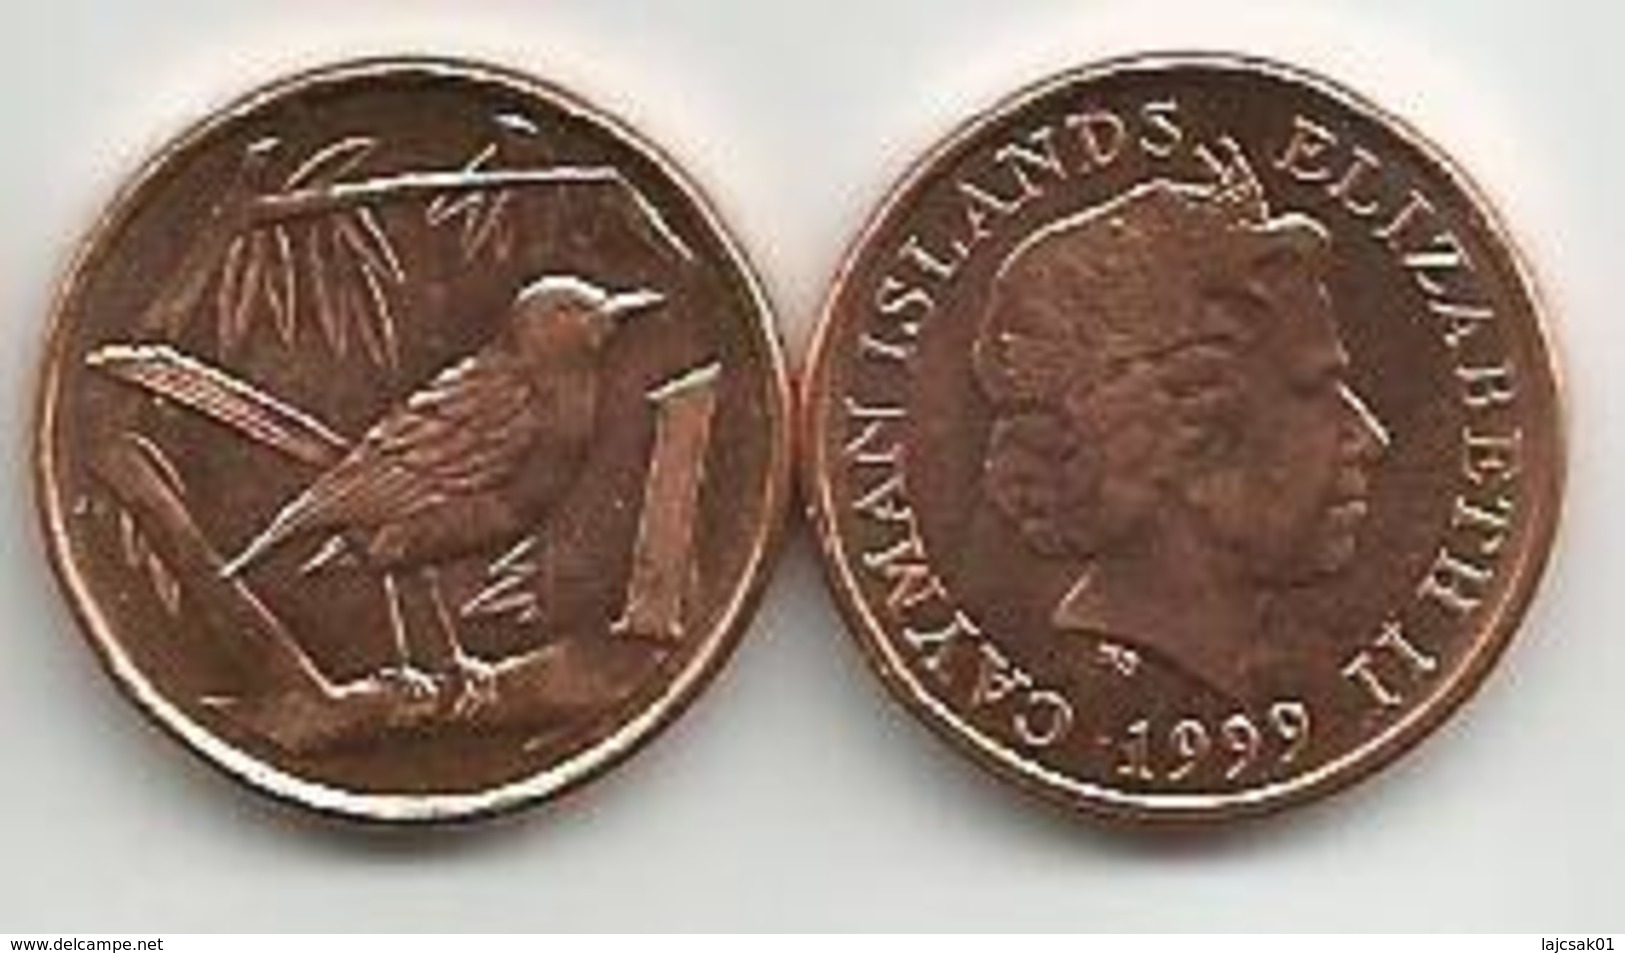 Cayman Islands 1 Cent 1999. High Grade - Kaimaninseln